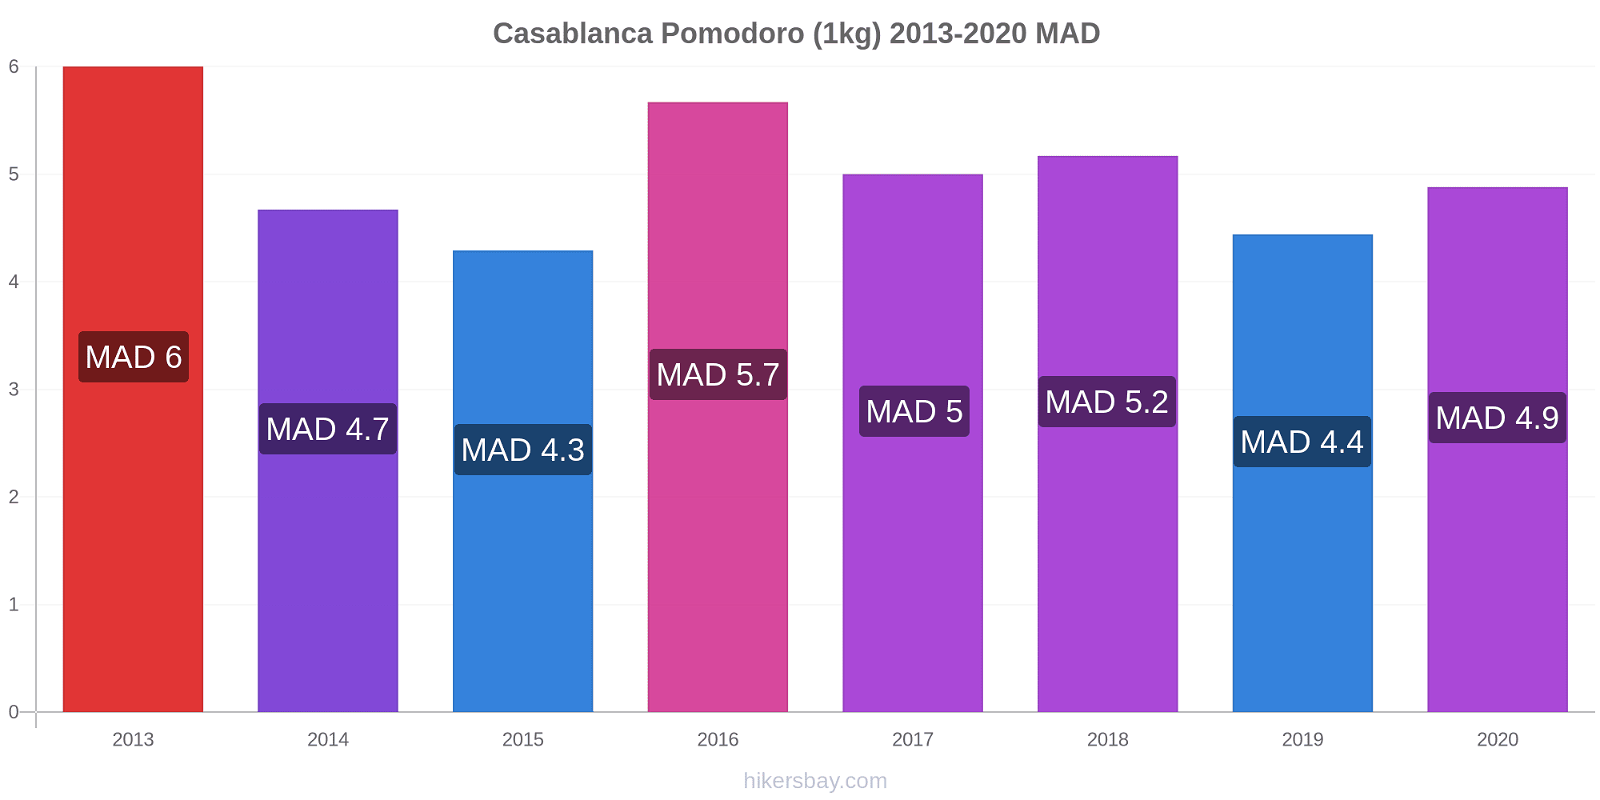 Casablanca variazioni di prezzo Pomodoro (1kg) hikersbay.com